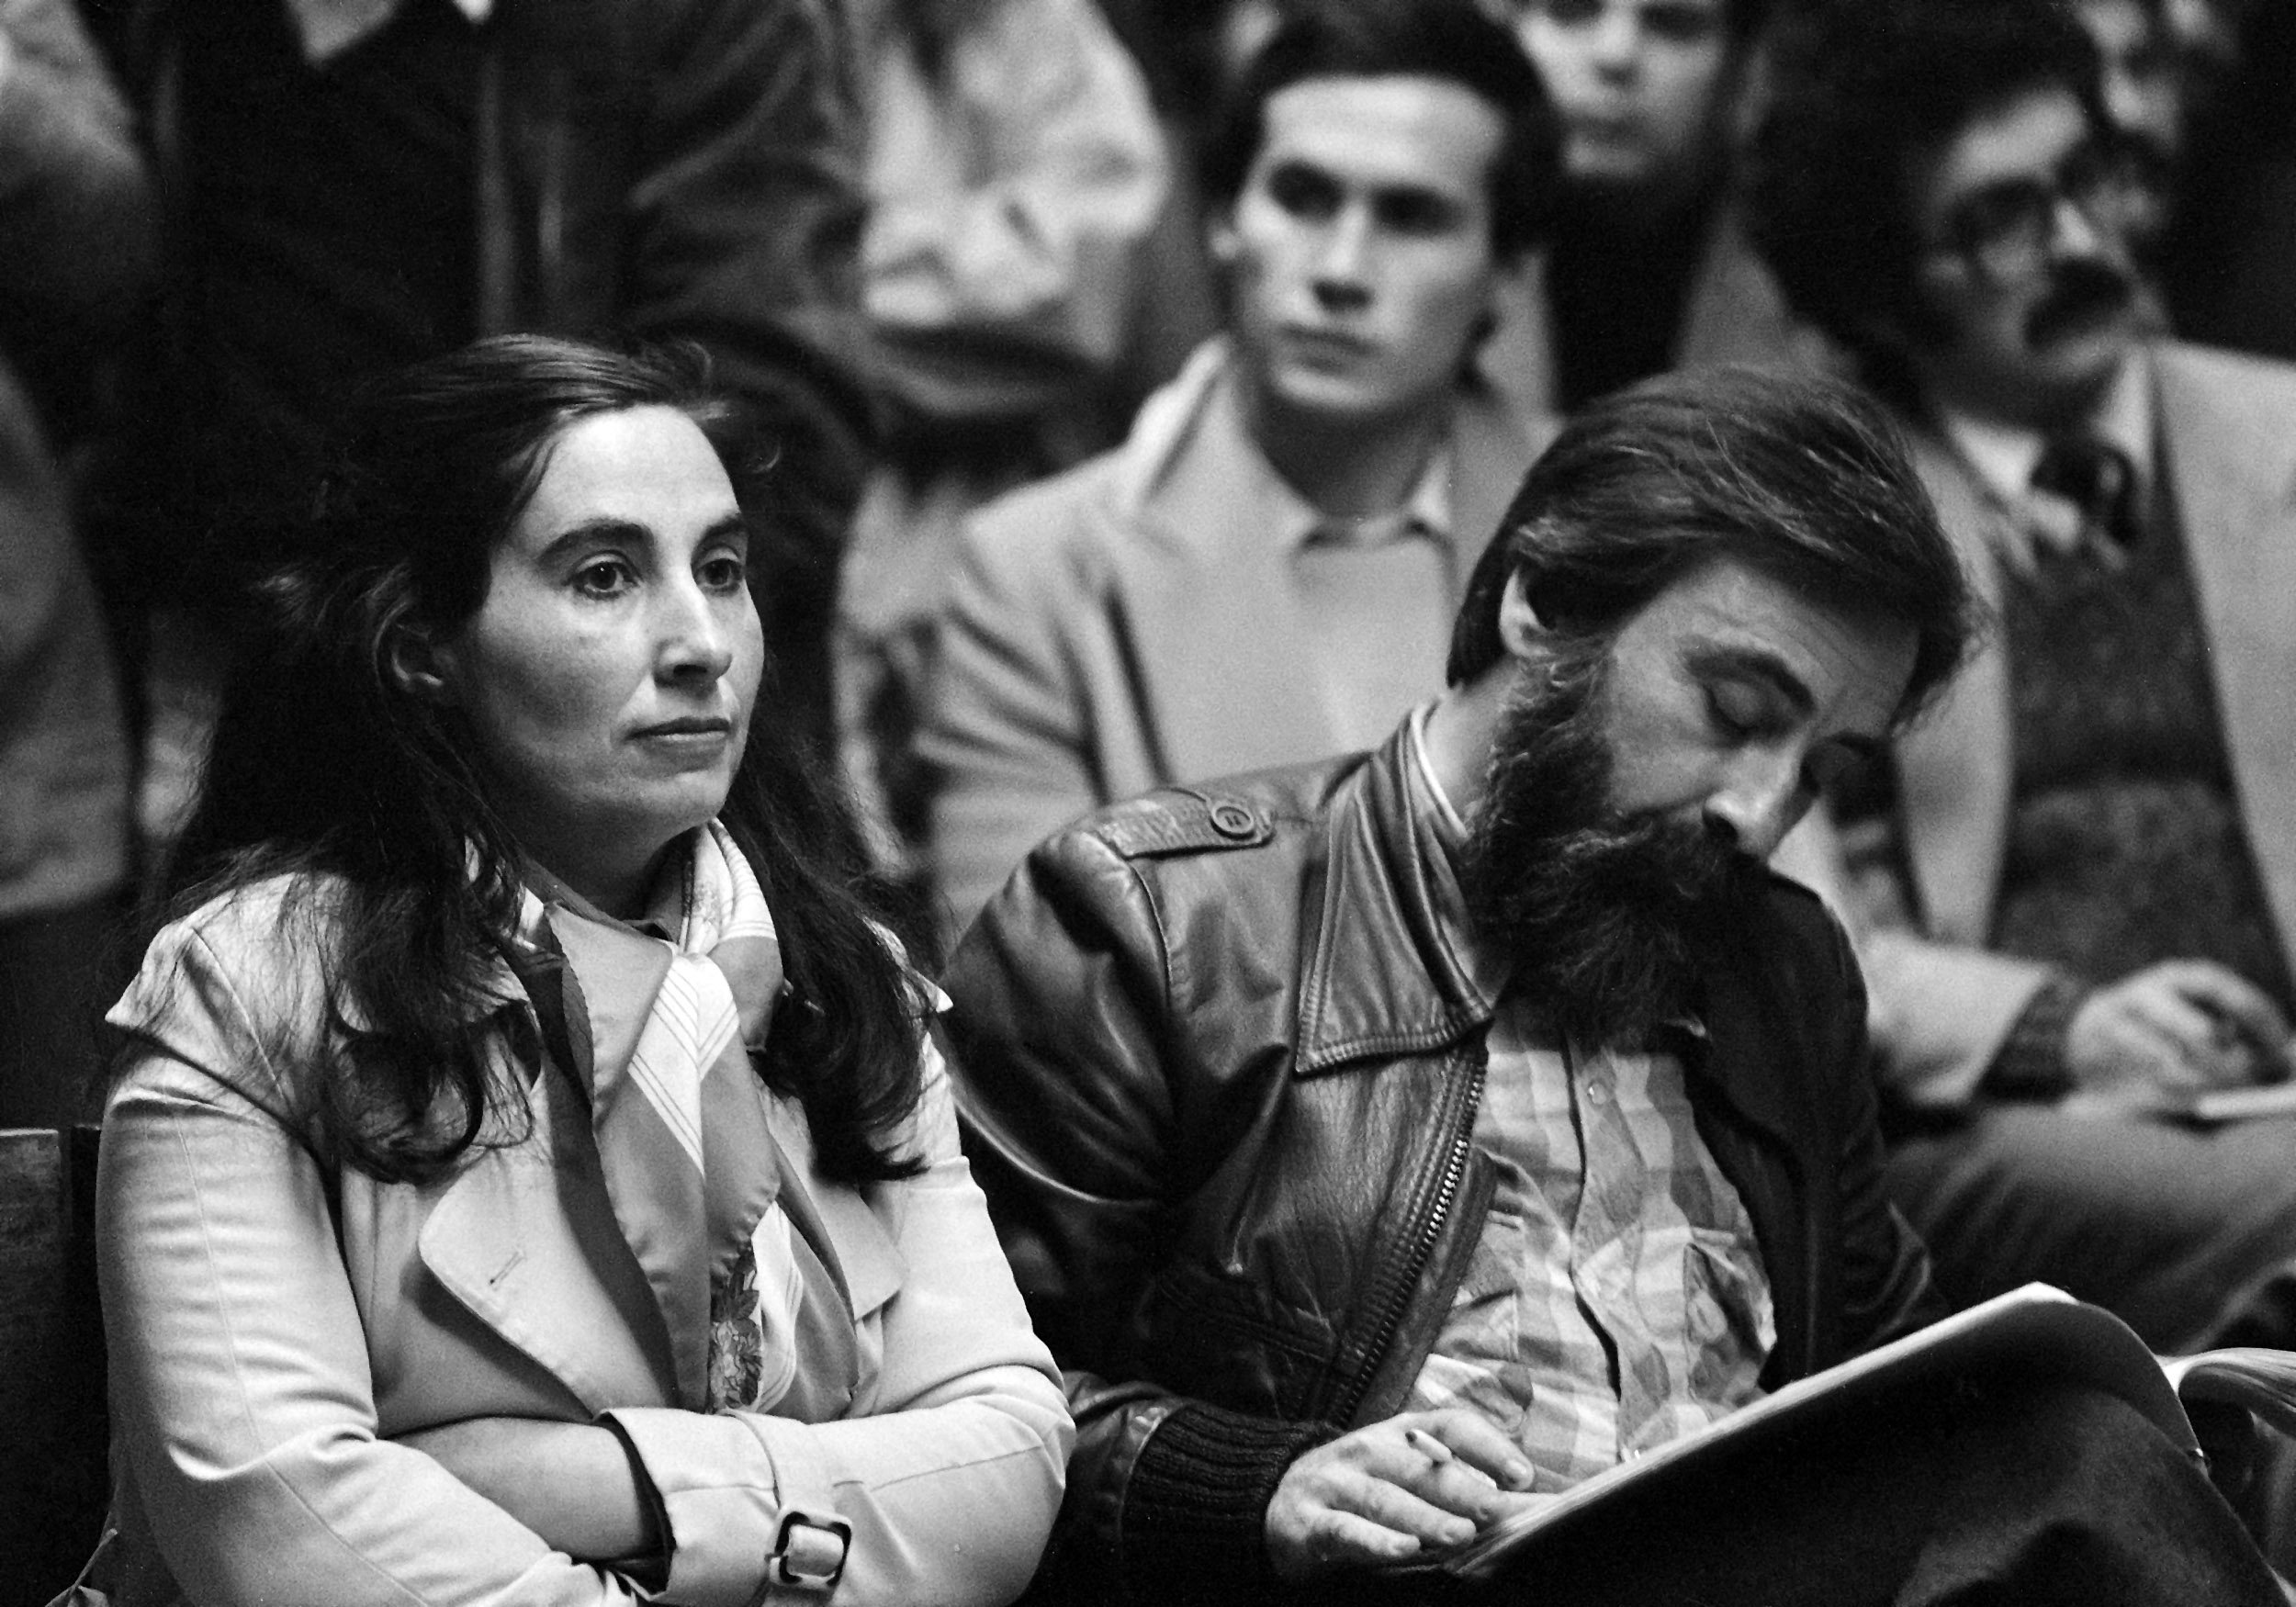 Isabel do Carmo e Carlos Antunes no julgamento sobre as Brigadas Revolucionárias